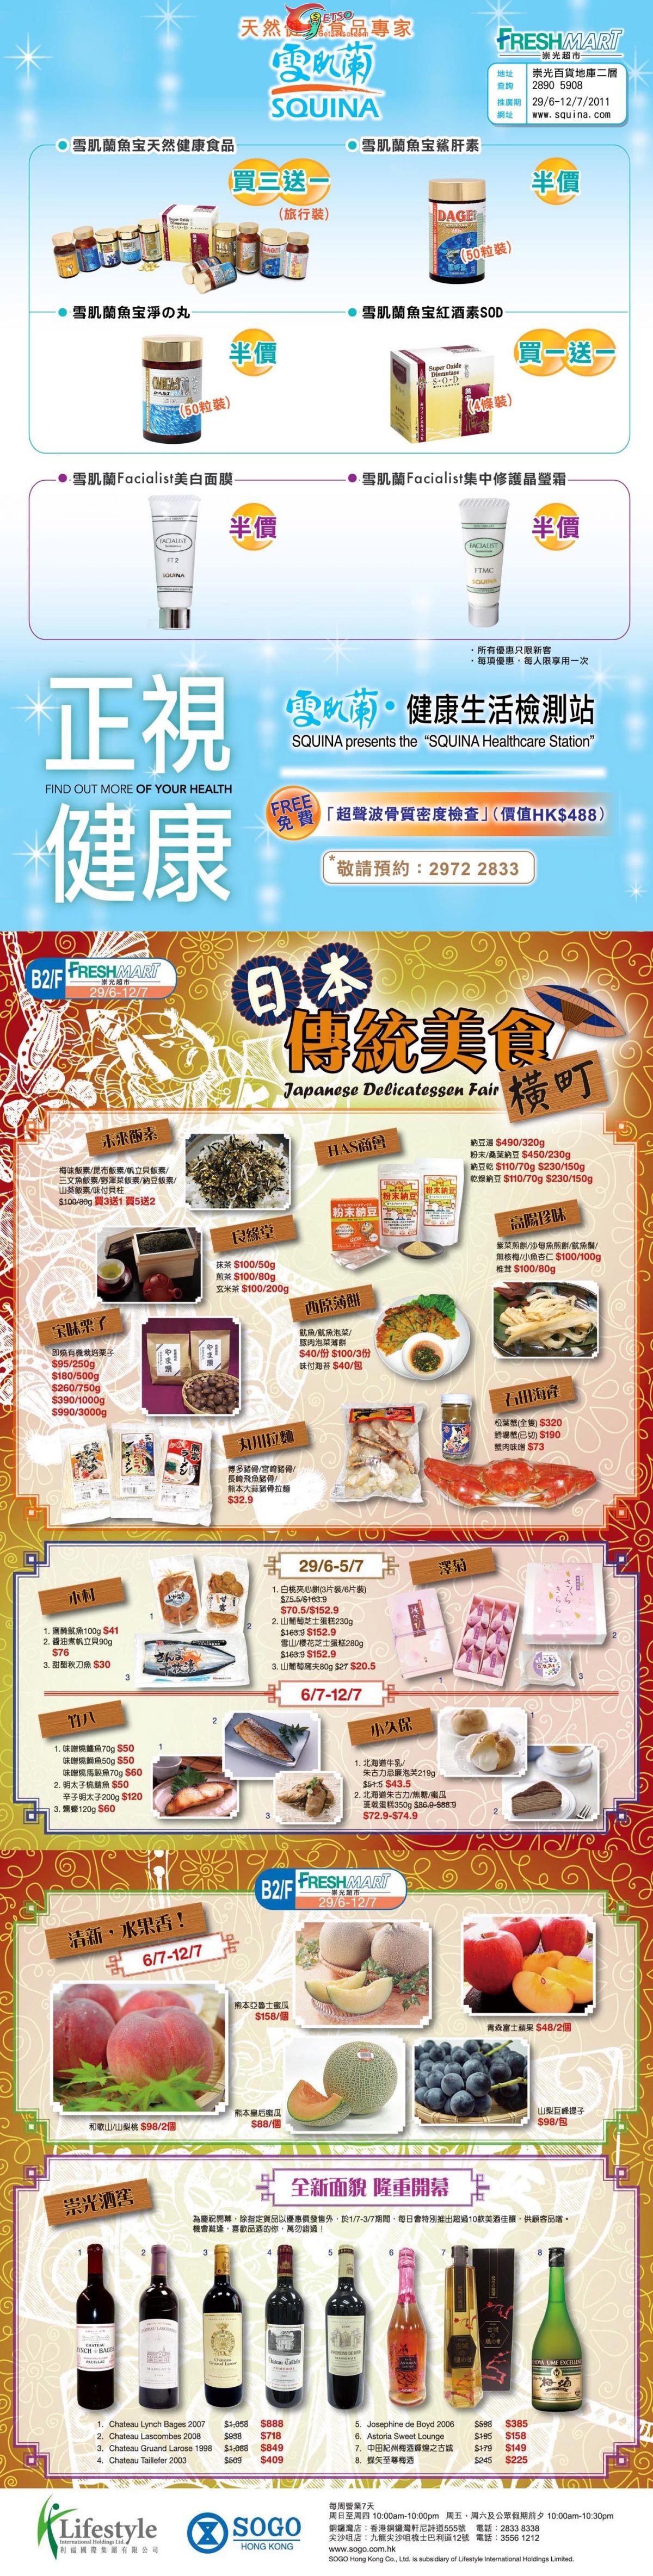 日本傳統美食展@銅鑼灣崇光(至11年7月12日)圖片1